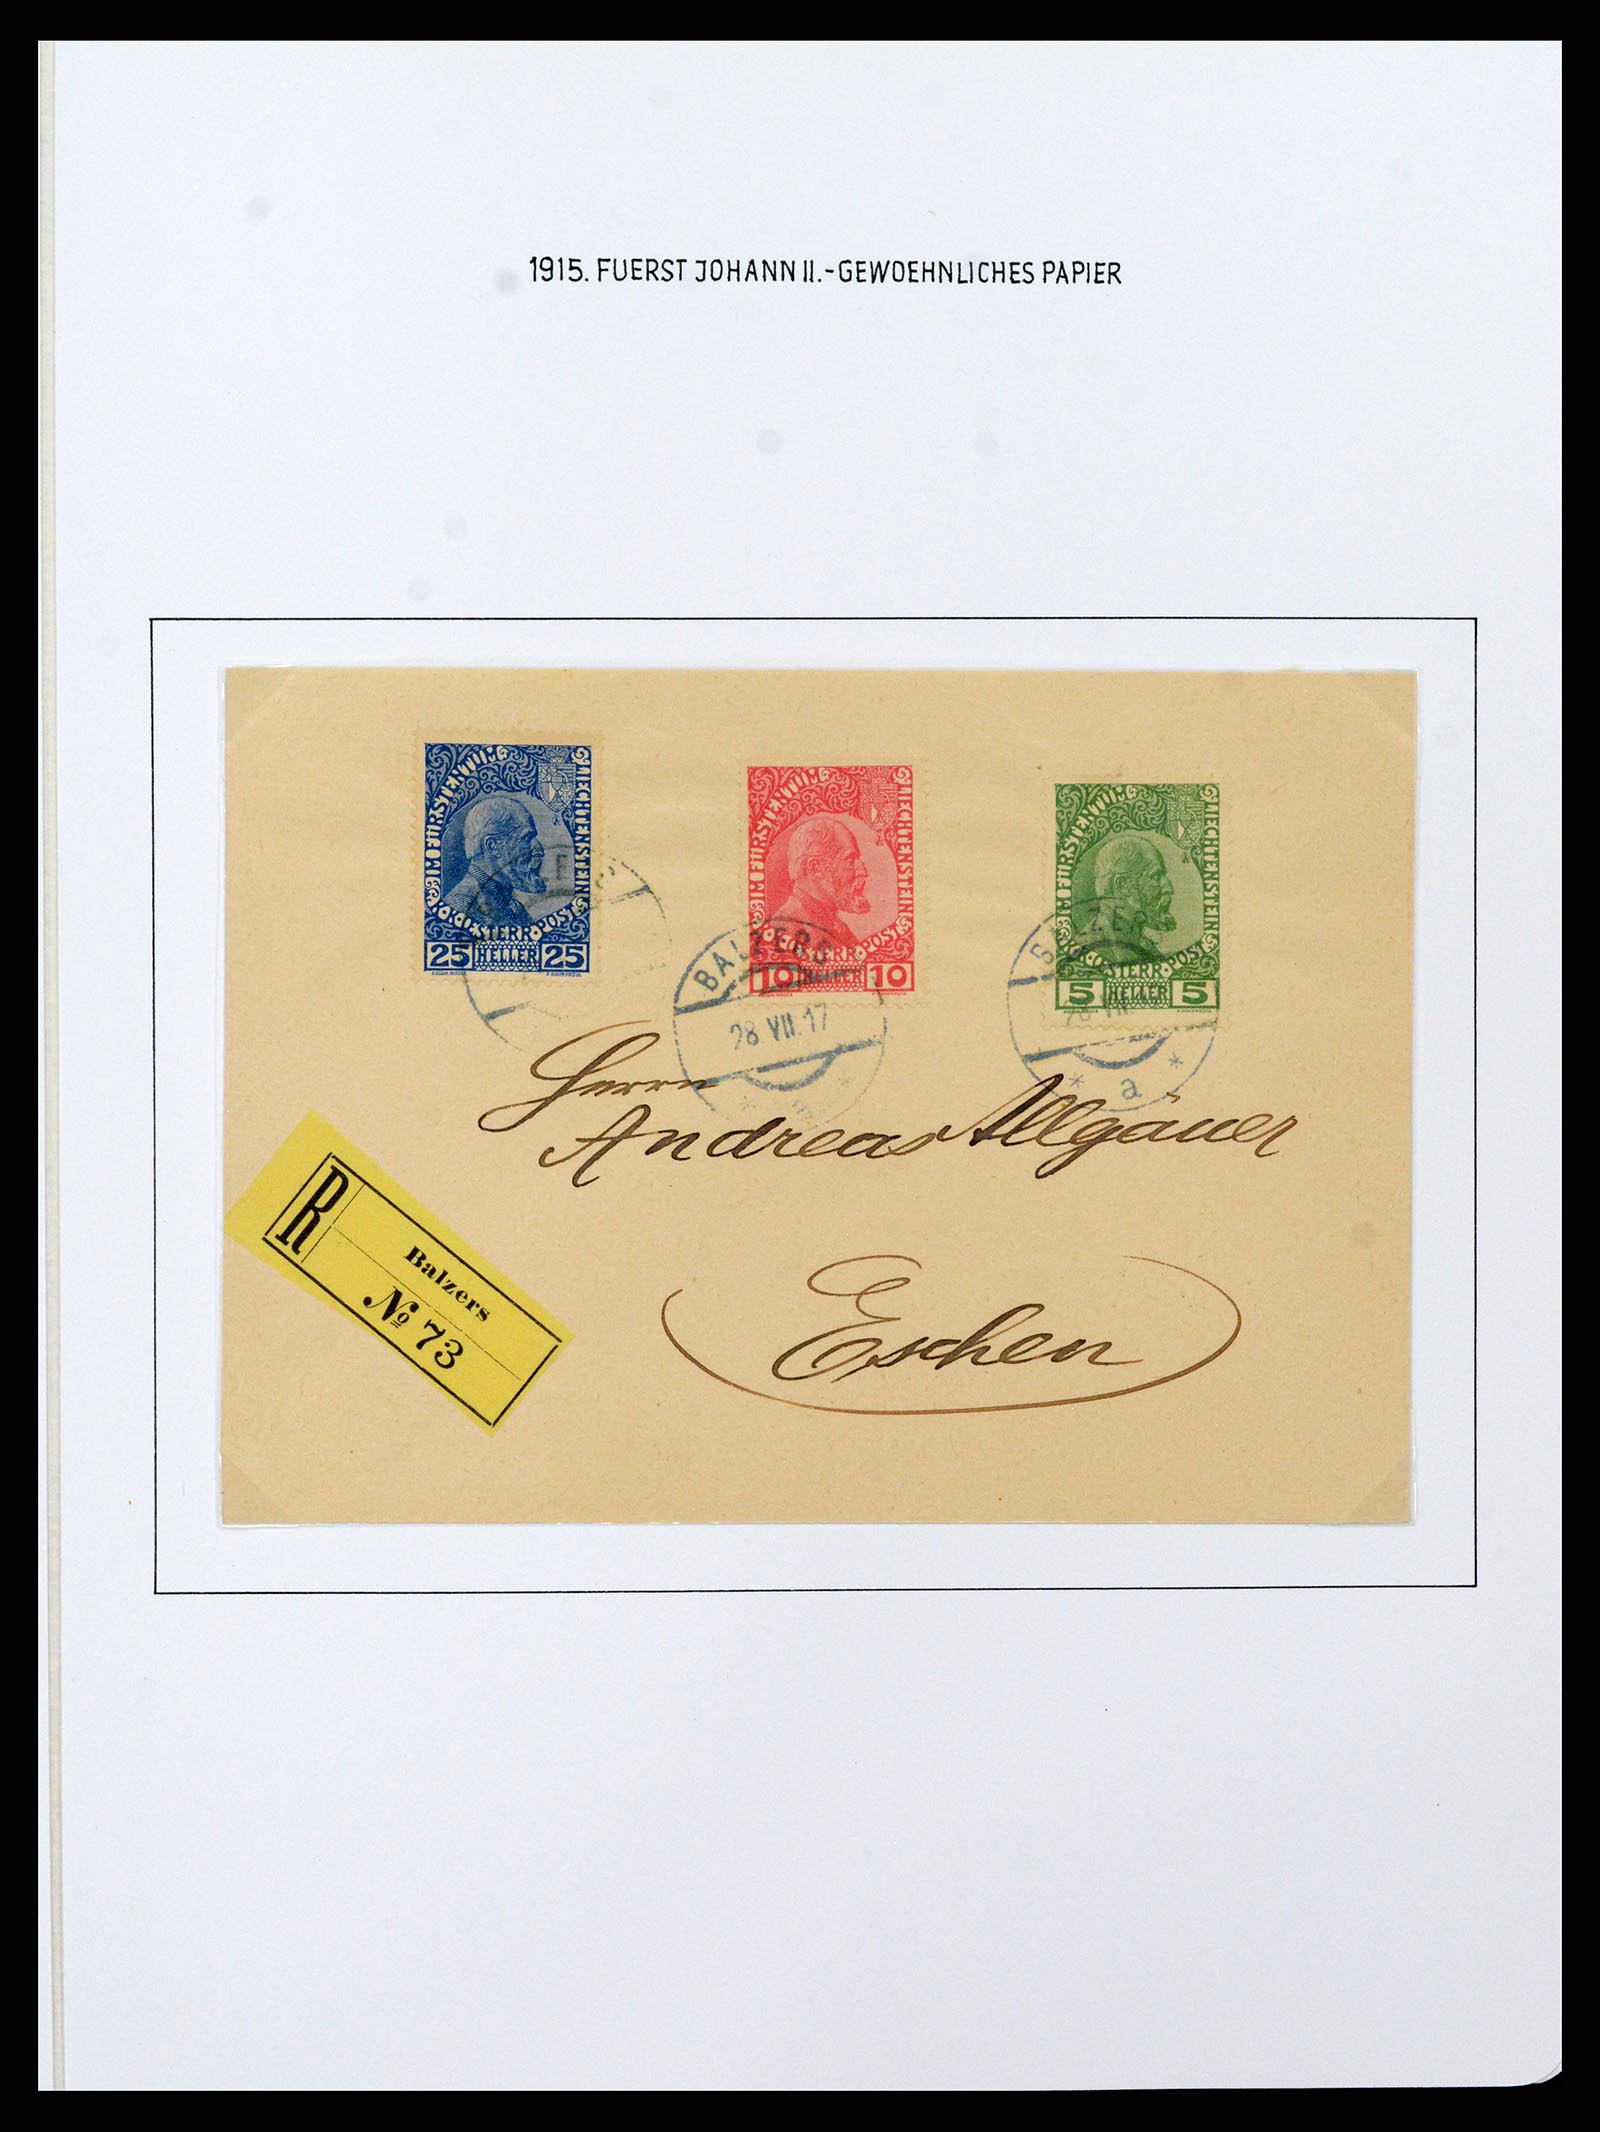 37150 0016 - Stamp collection 37150 Liechtenstein supercollection 1912-1962.